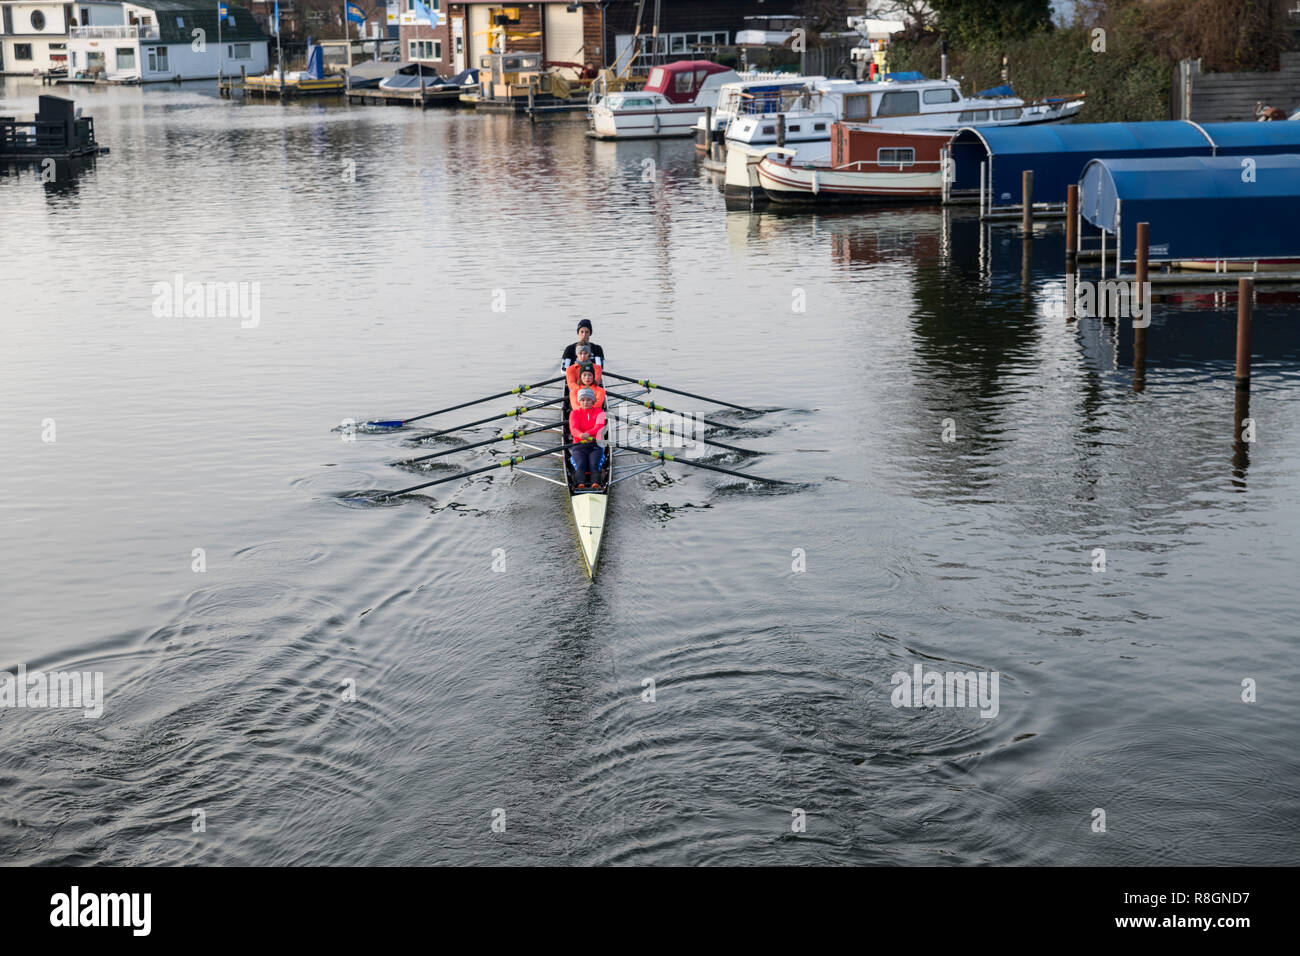 Rotterdam,Hollande,15-déc-2018:quatre femme l'aviron dans un bateau sur la rotte à Rotterdam aux Pays-Bas, la rotte est une rivière de Rotterdam, où les équipes d'Aviron Aviron le train sports Banque D'Images